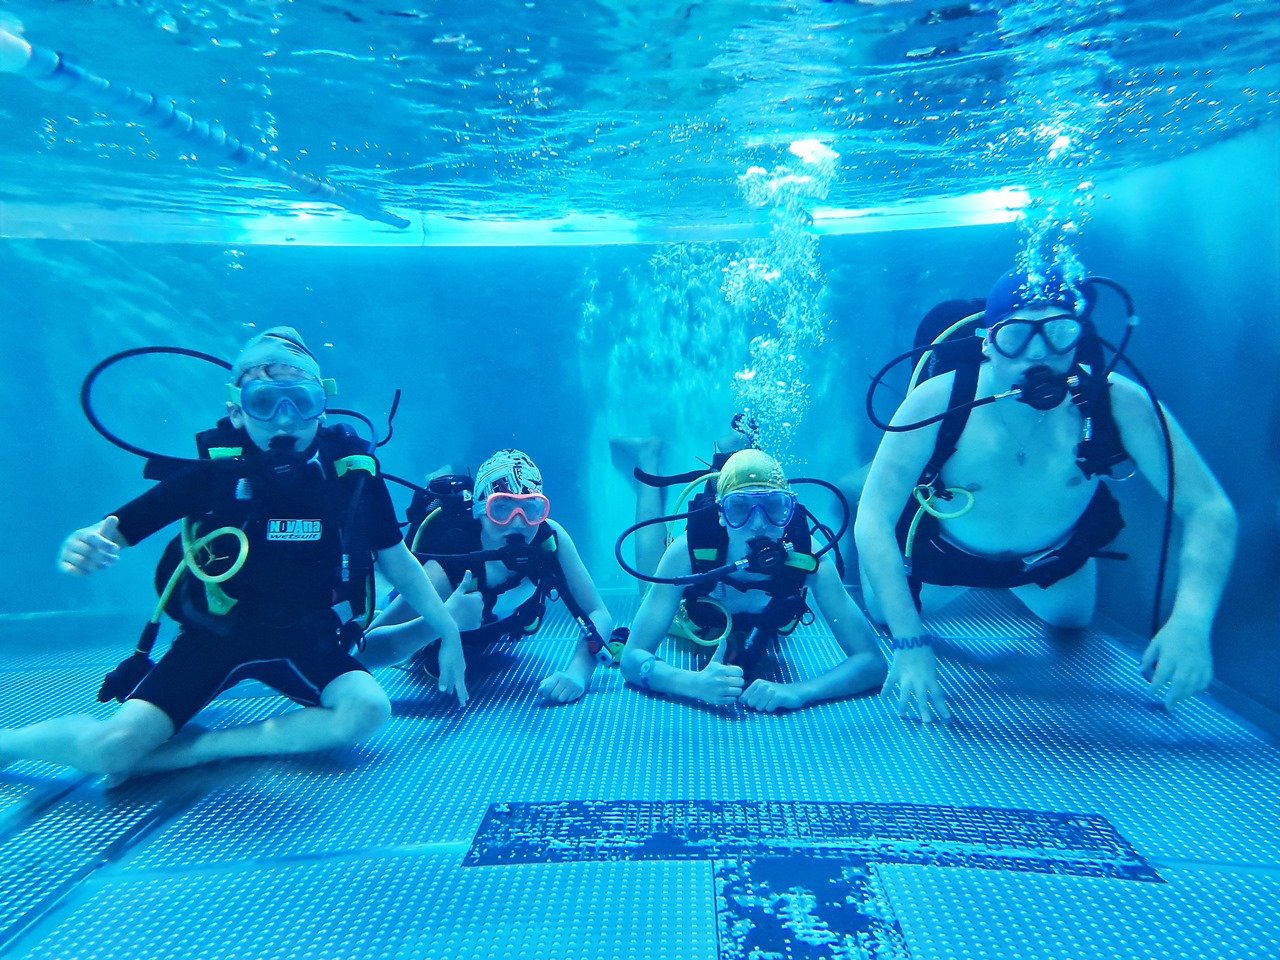 W Aquapark Neptun odby艂y si臋 zaj臋cia z nurkowania